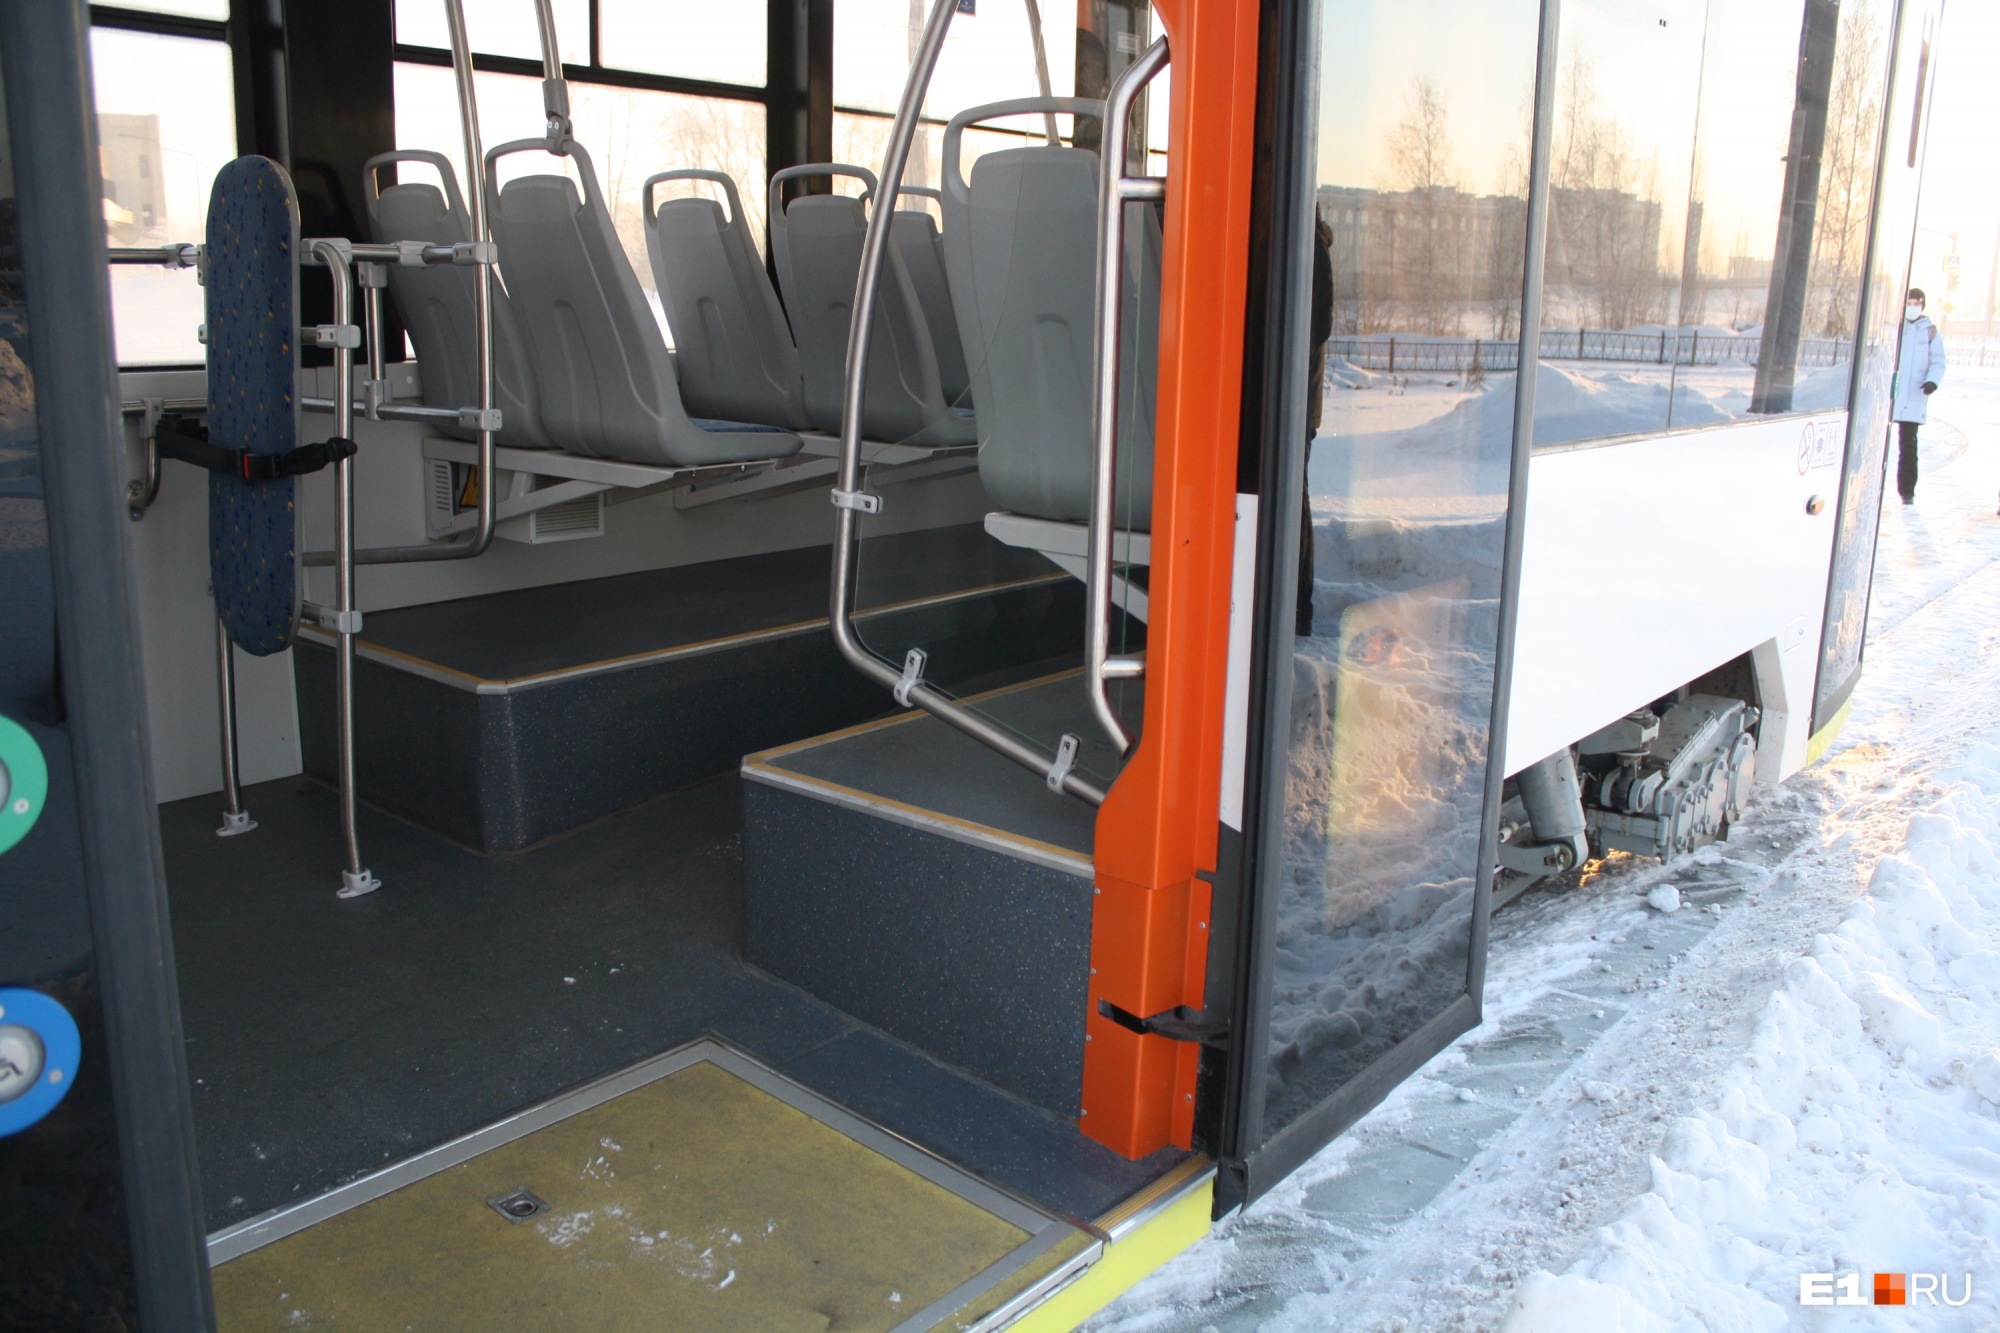 У трамвая широкие двери, низкий пол и откидной пандус для инвалидных колясок